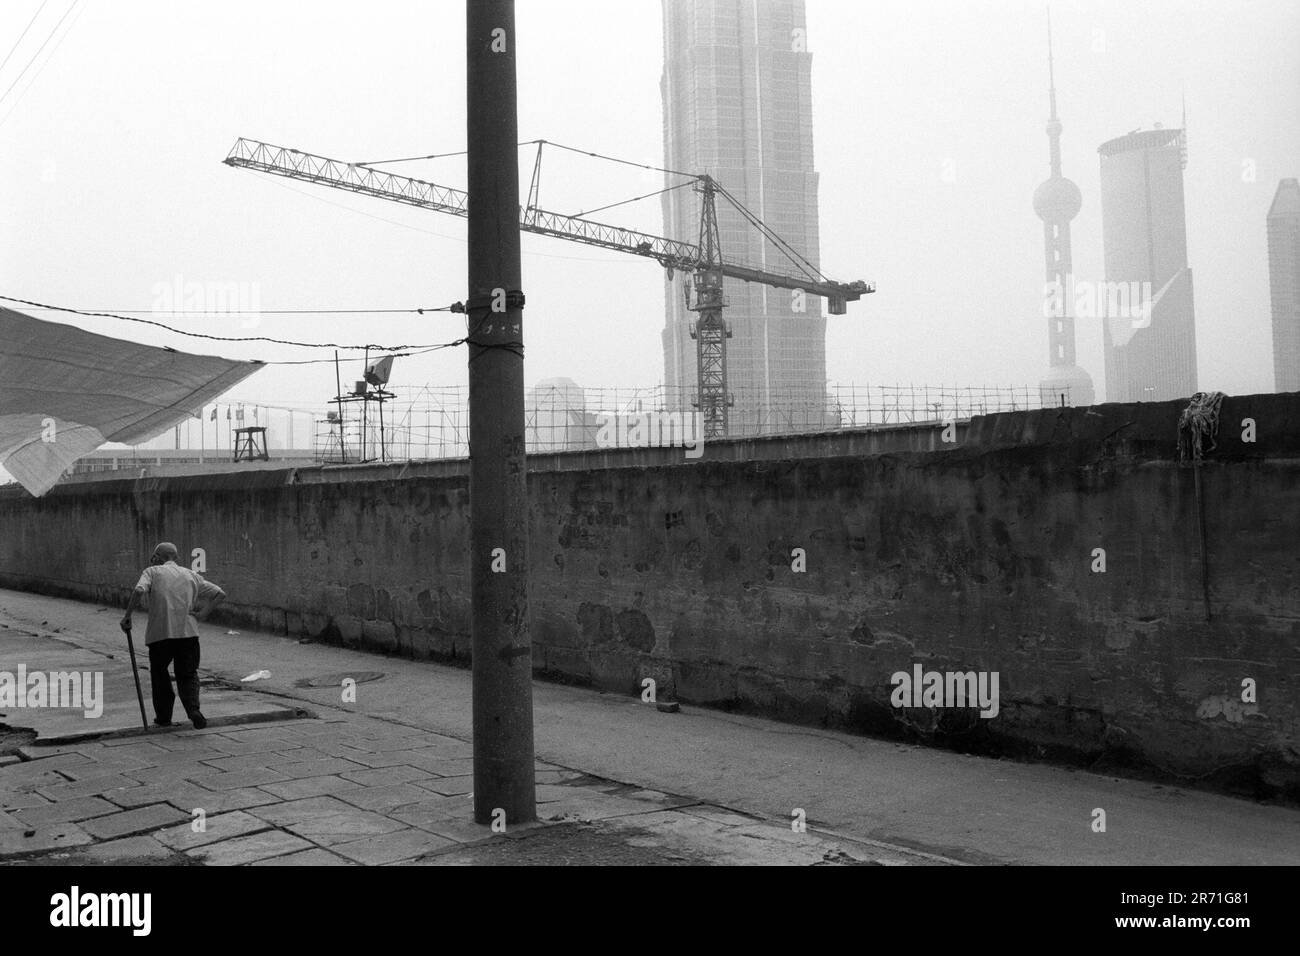 Shanghai China 2000. Eine ruhige Ecke in Pudong. Vor zwanzig Jahren wurde in Pudong auf landwirtschaftlich genutzten Flächen Gemüse und Baumwolle angebaut, wobei nur die Flussufer aufgebaut wurde. Die ehemaligen Lagerhäuser der internationalen Unternehmen, die in den 1940er Jahren den Fluss verließen, verfielen meist oder wurden zu leichten industriellen Zwecken umgebaut, während die Werften weiter flussabwärts verlegt waren. 2000s HOMER SYKES Stockfoto